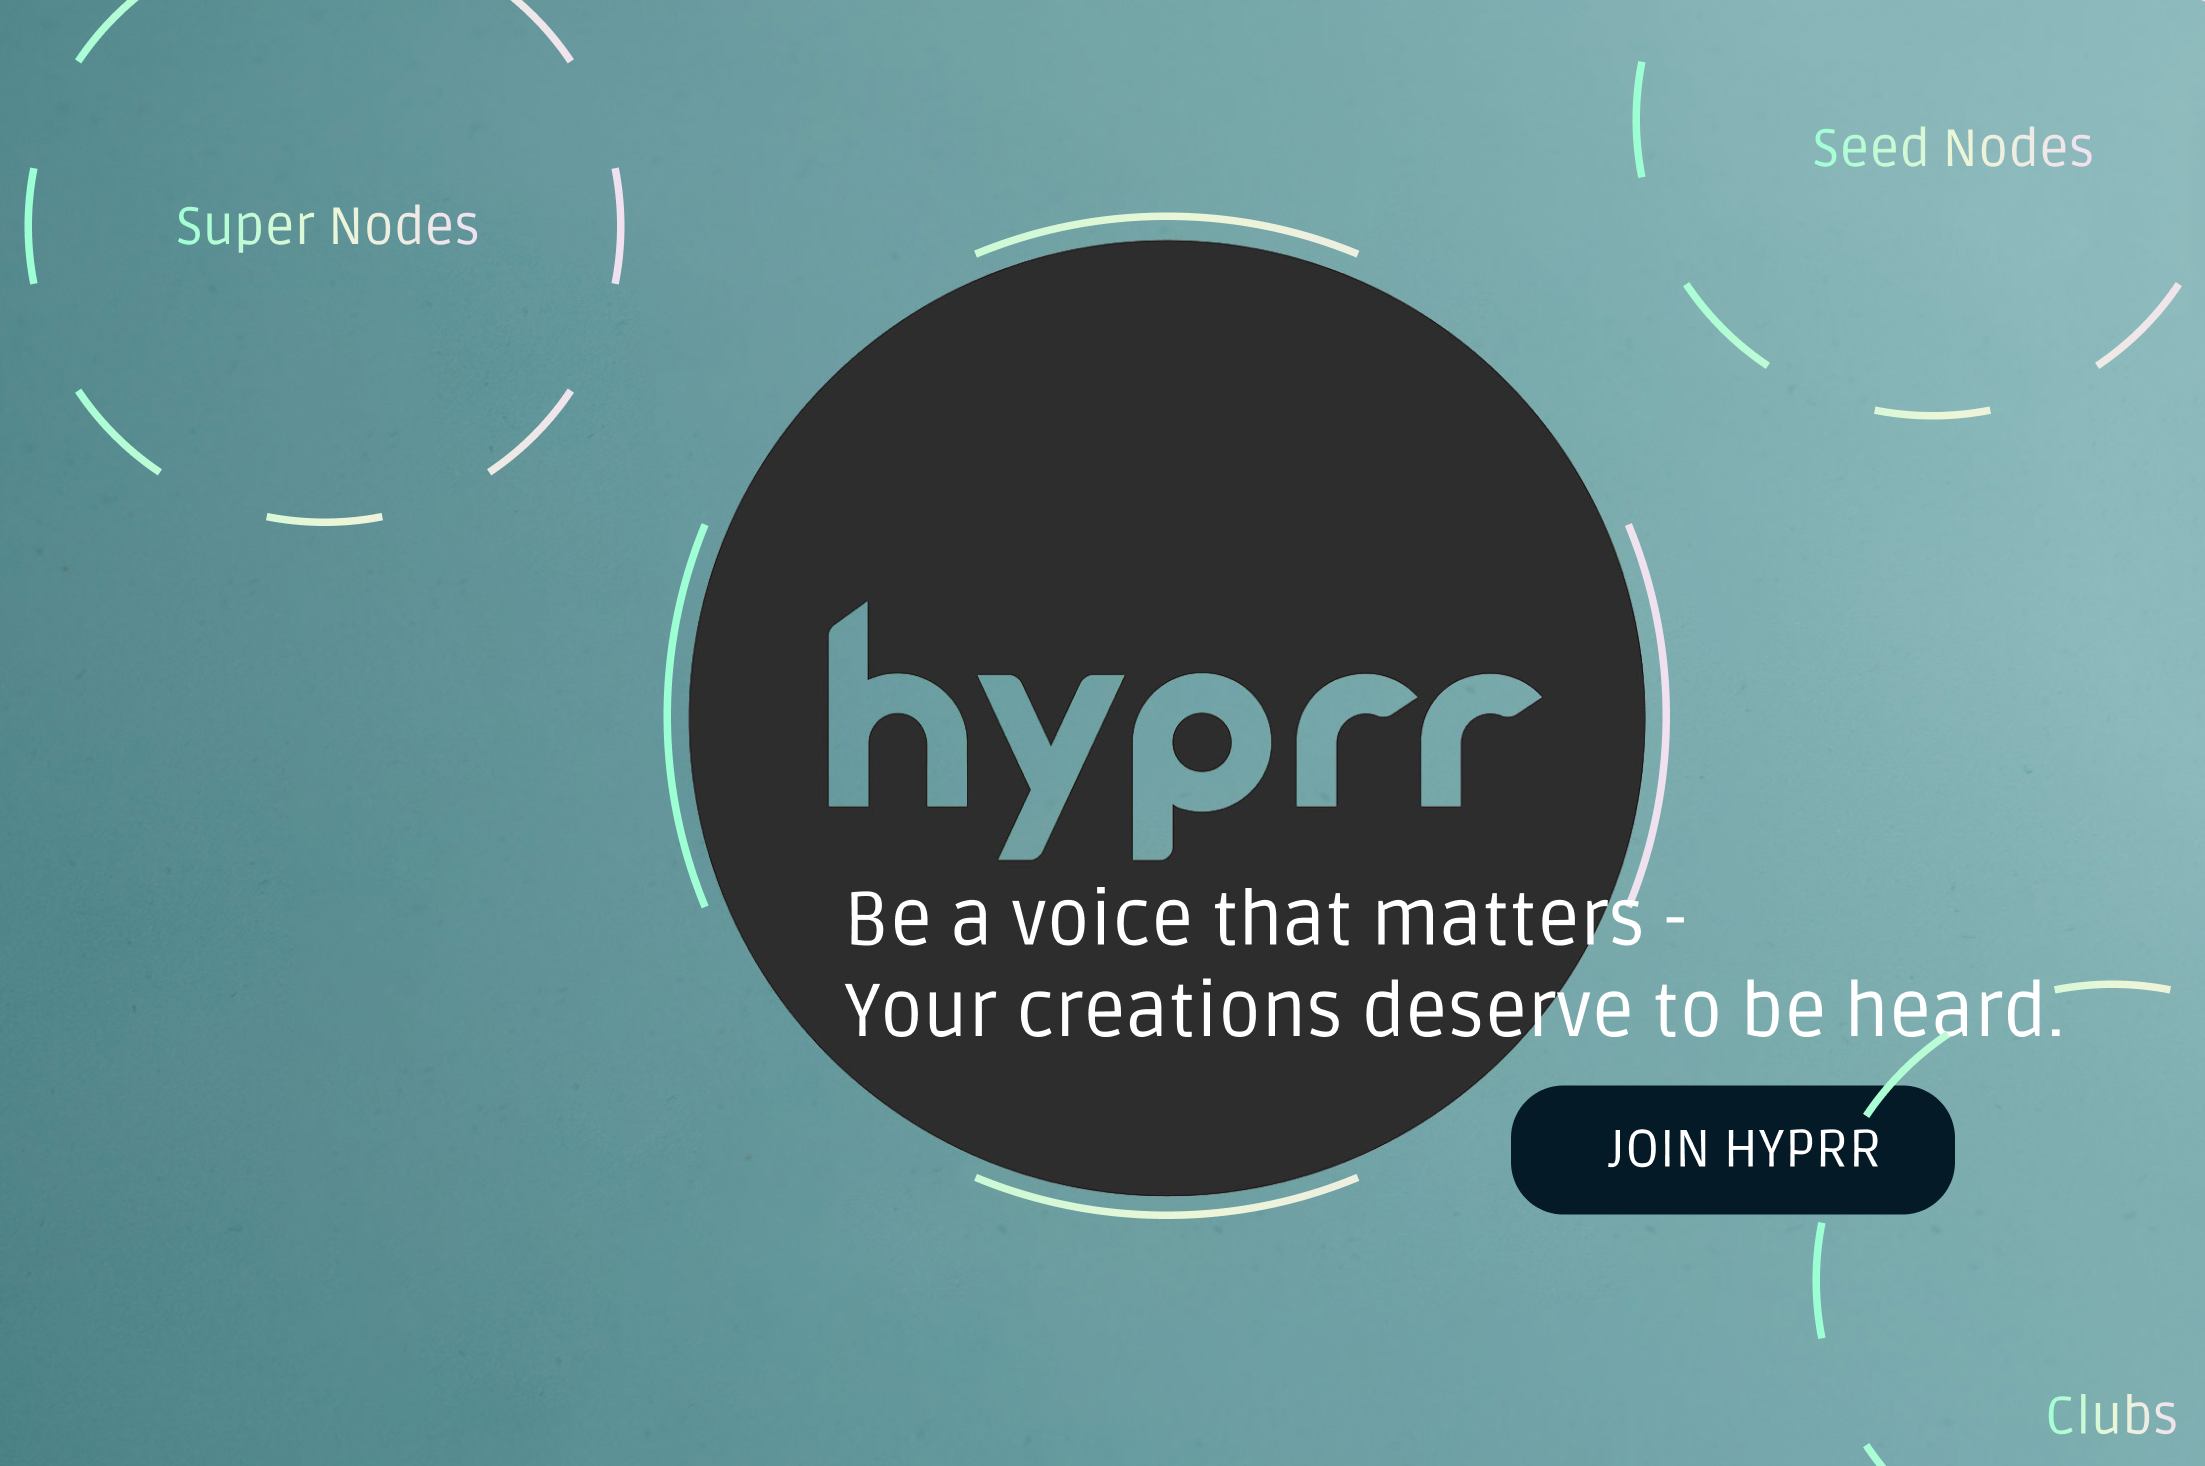 Hyprr - Be a voice that matters.